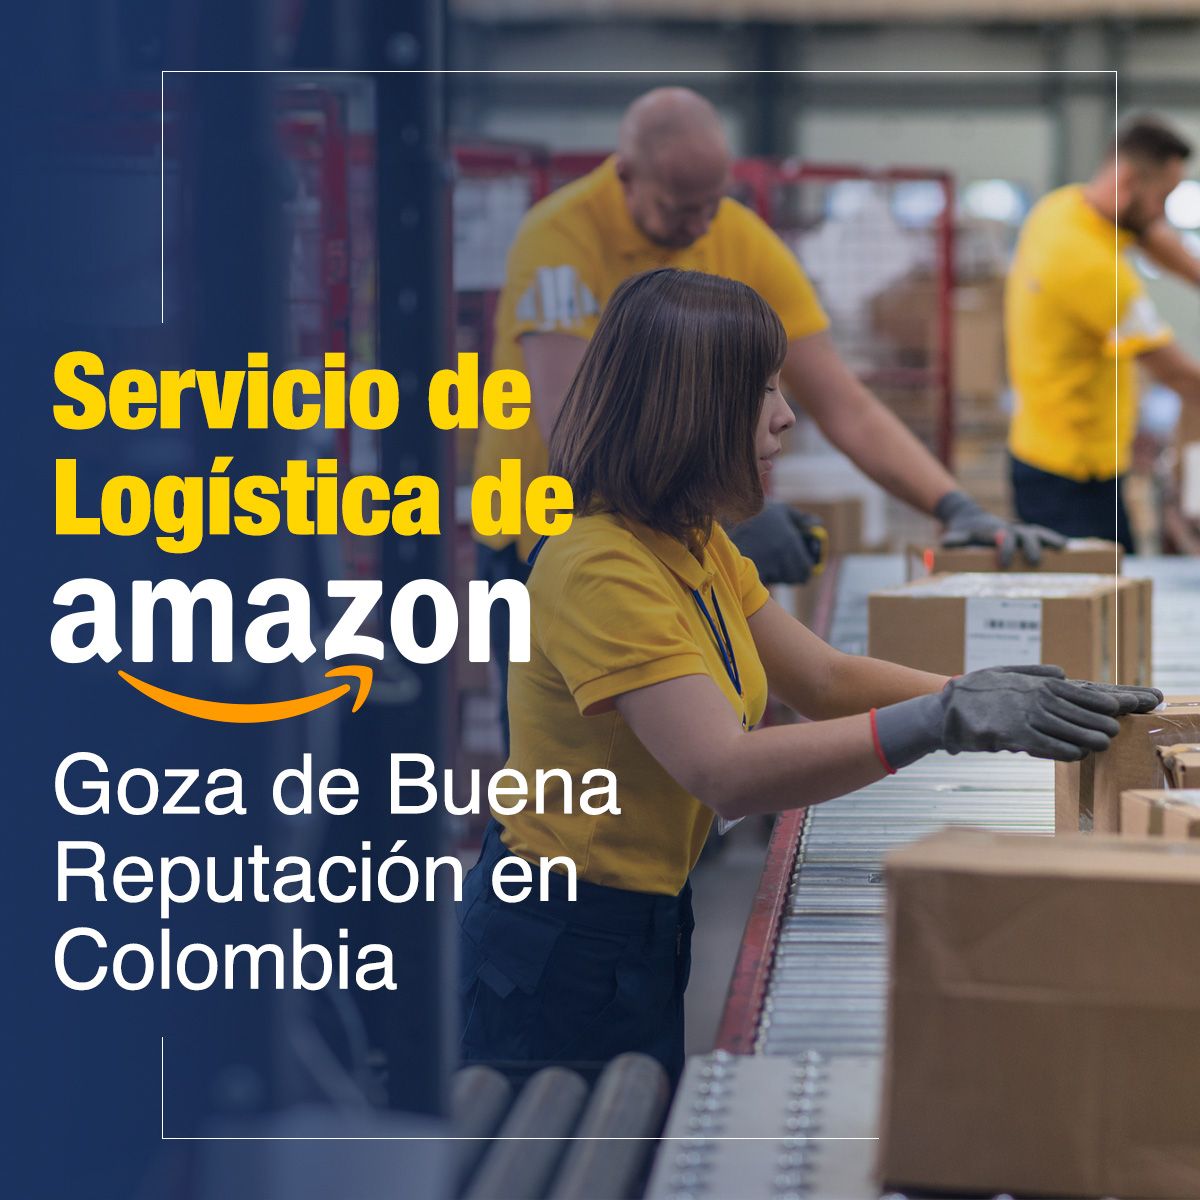 Servicio de Logística de Amazon Goza de Buena Reputación en Colombia